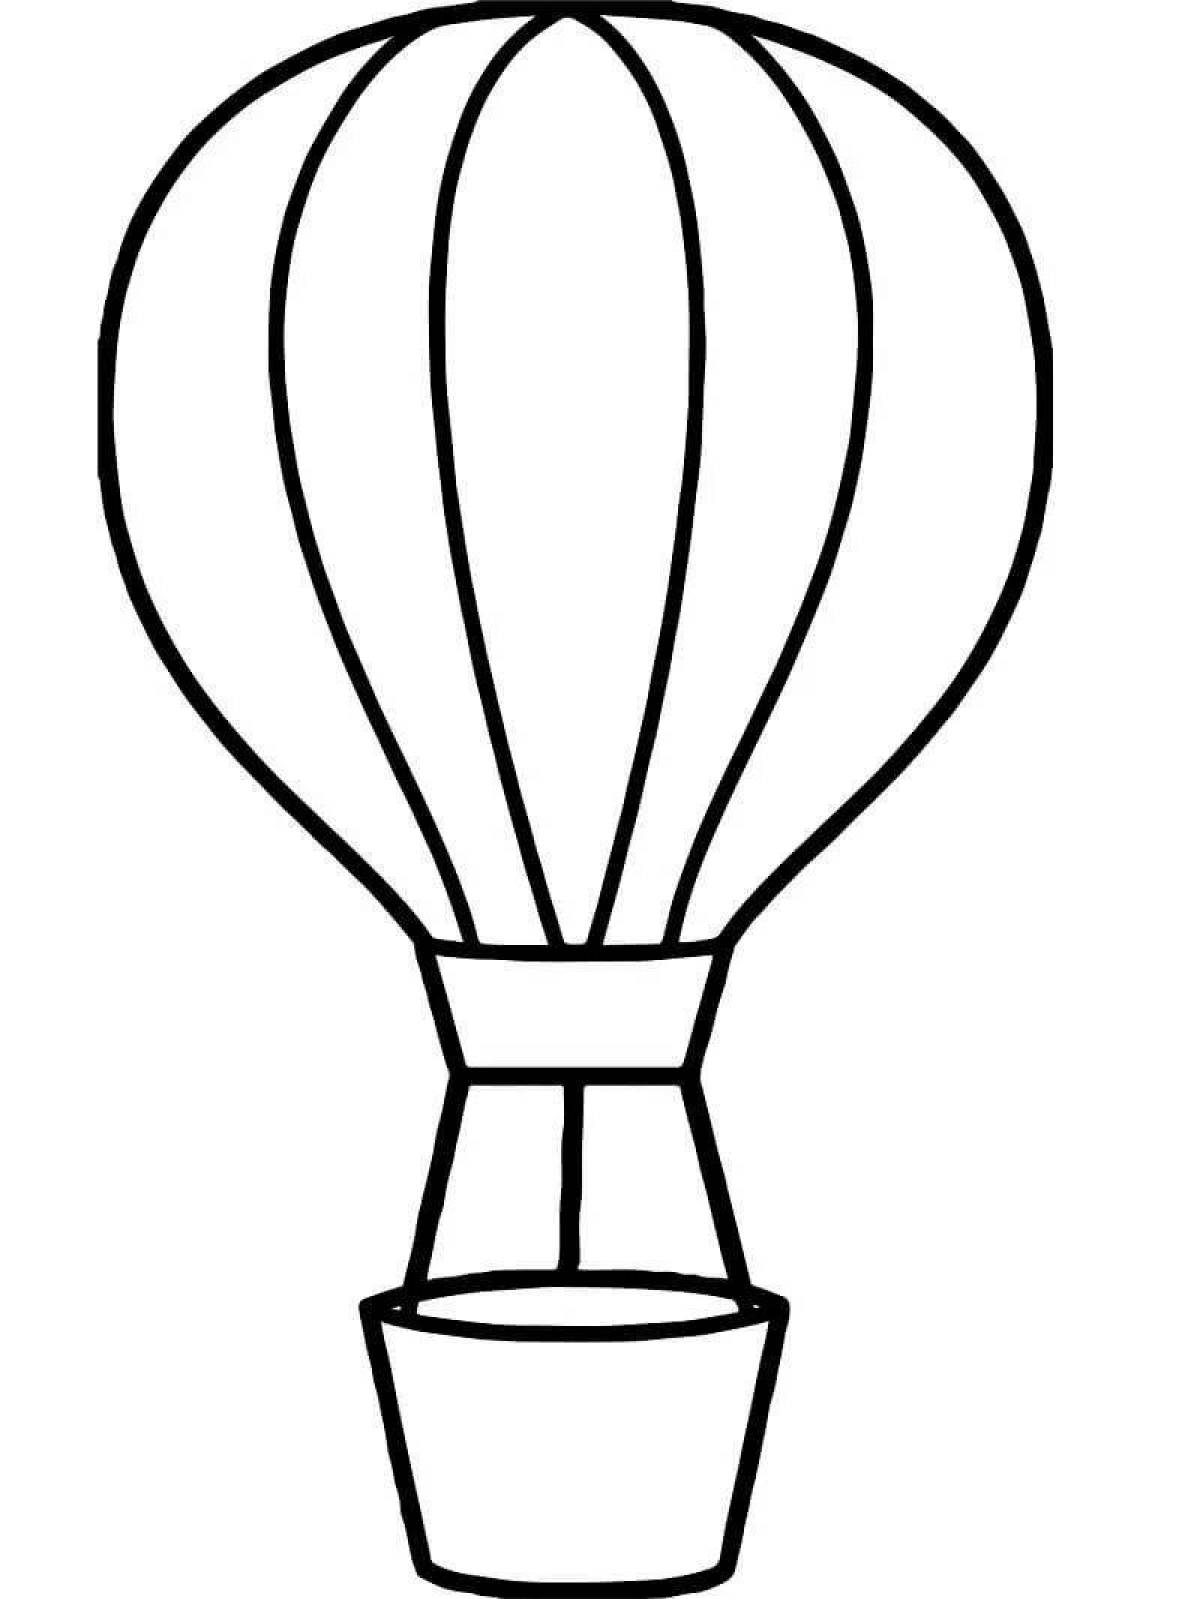 Волшебный воздушный шар с корзиной раскраска для детей